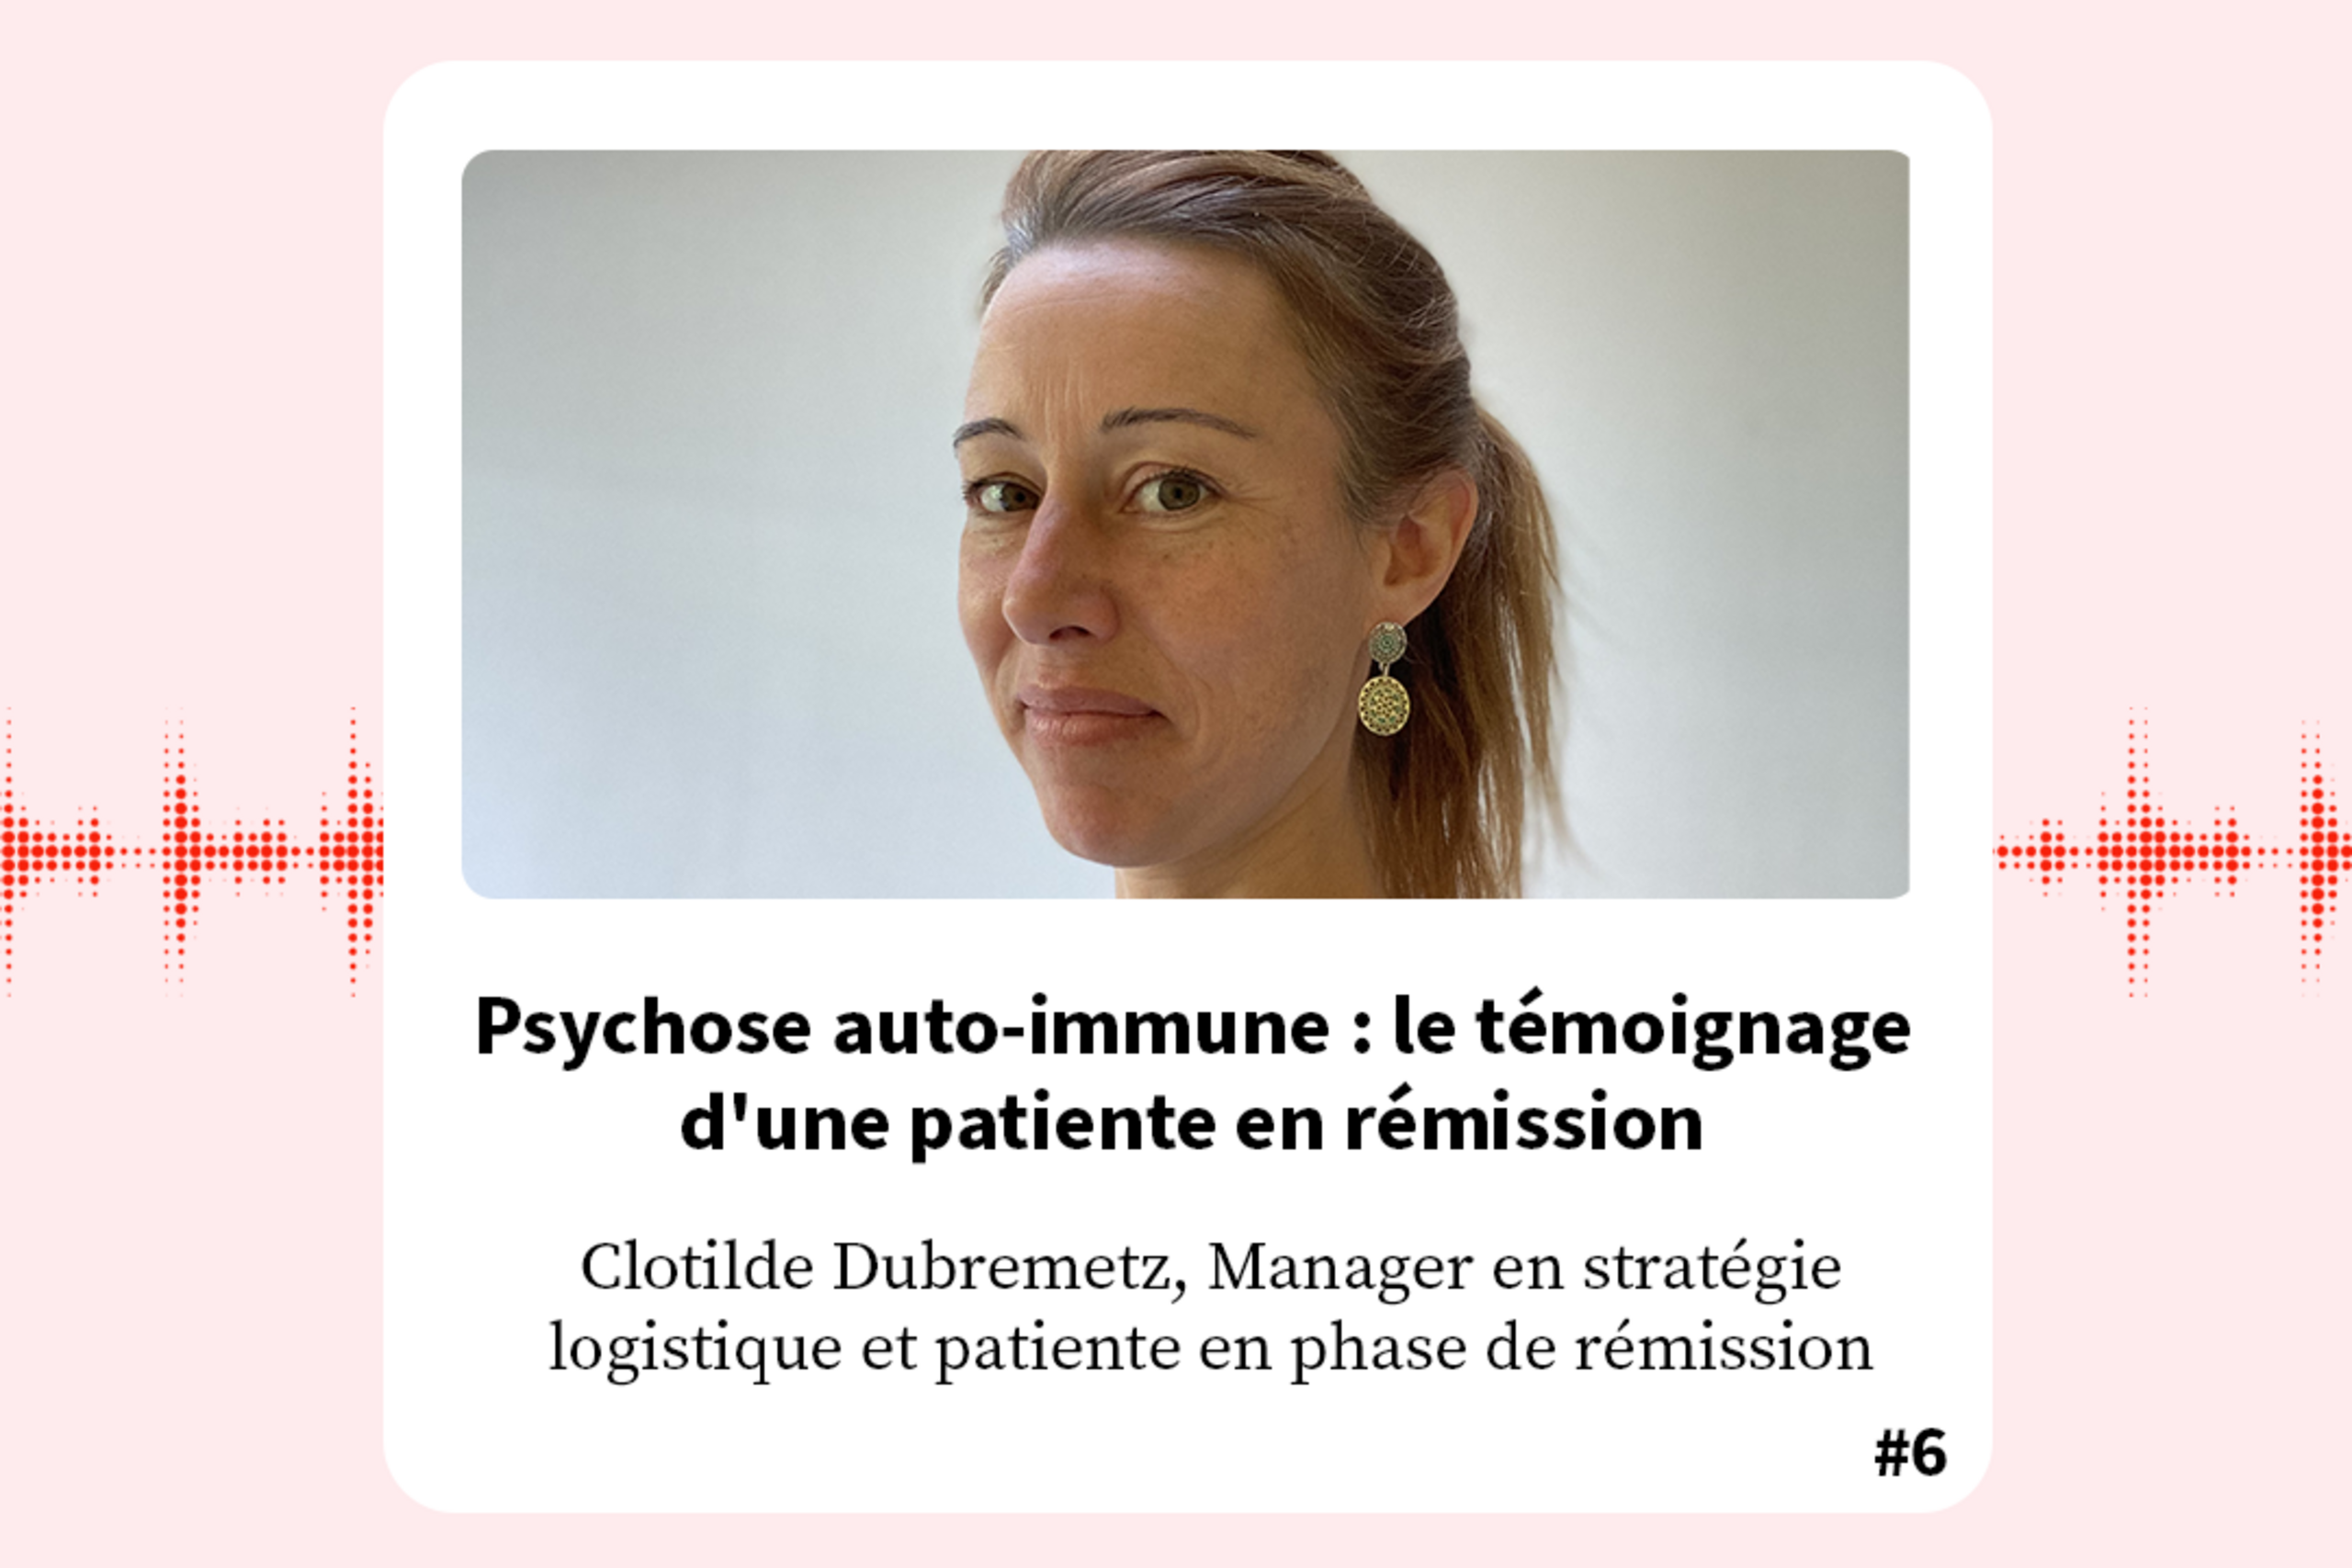 FondaMental Talk - Podcast Clotilde Dubremetz : Psychose auto-immune : le témoignage d'une patiente en rémission.